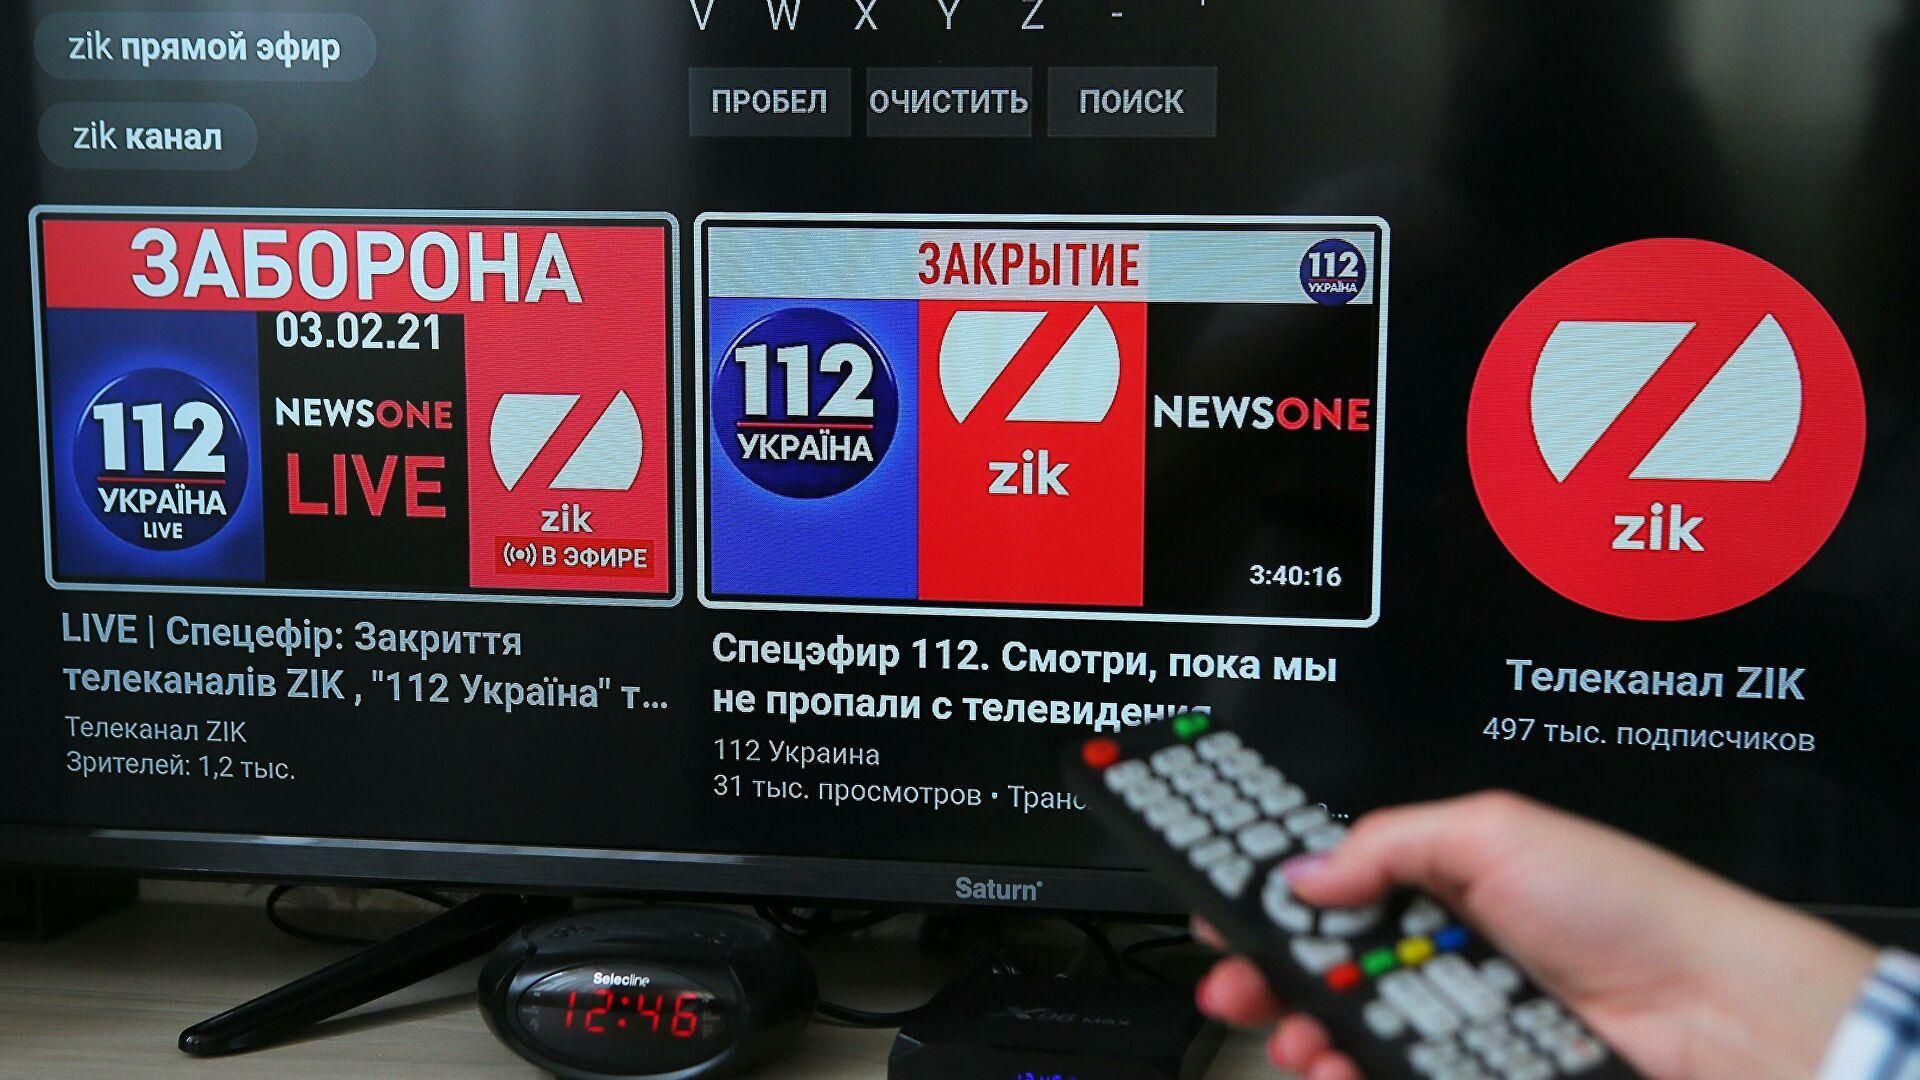 Ютуб-каналы ZIK, 112 Украина, NewsOn недоступны для просмотра